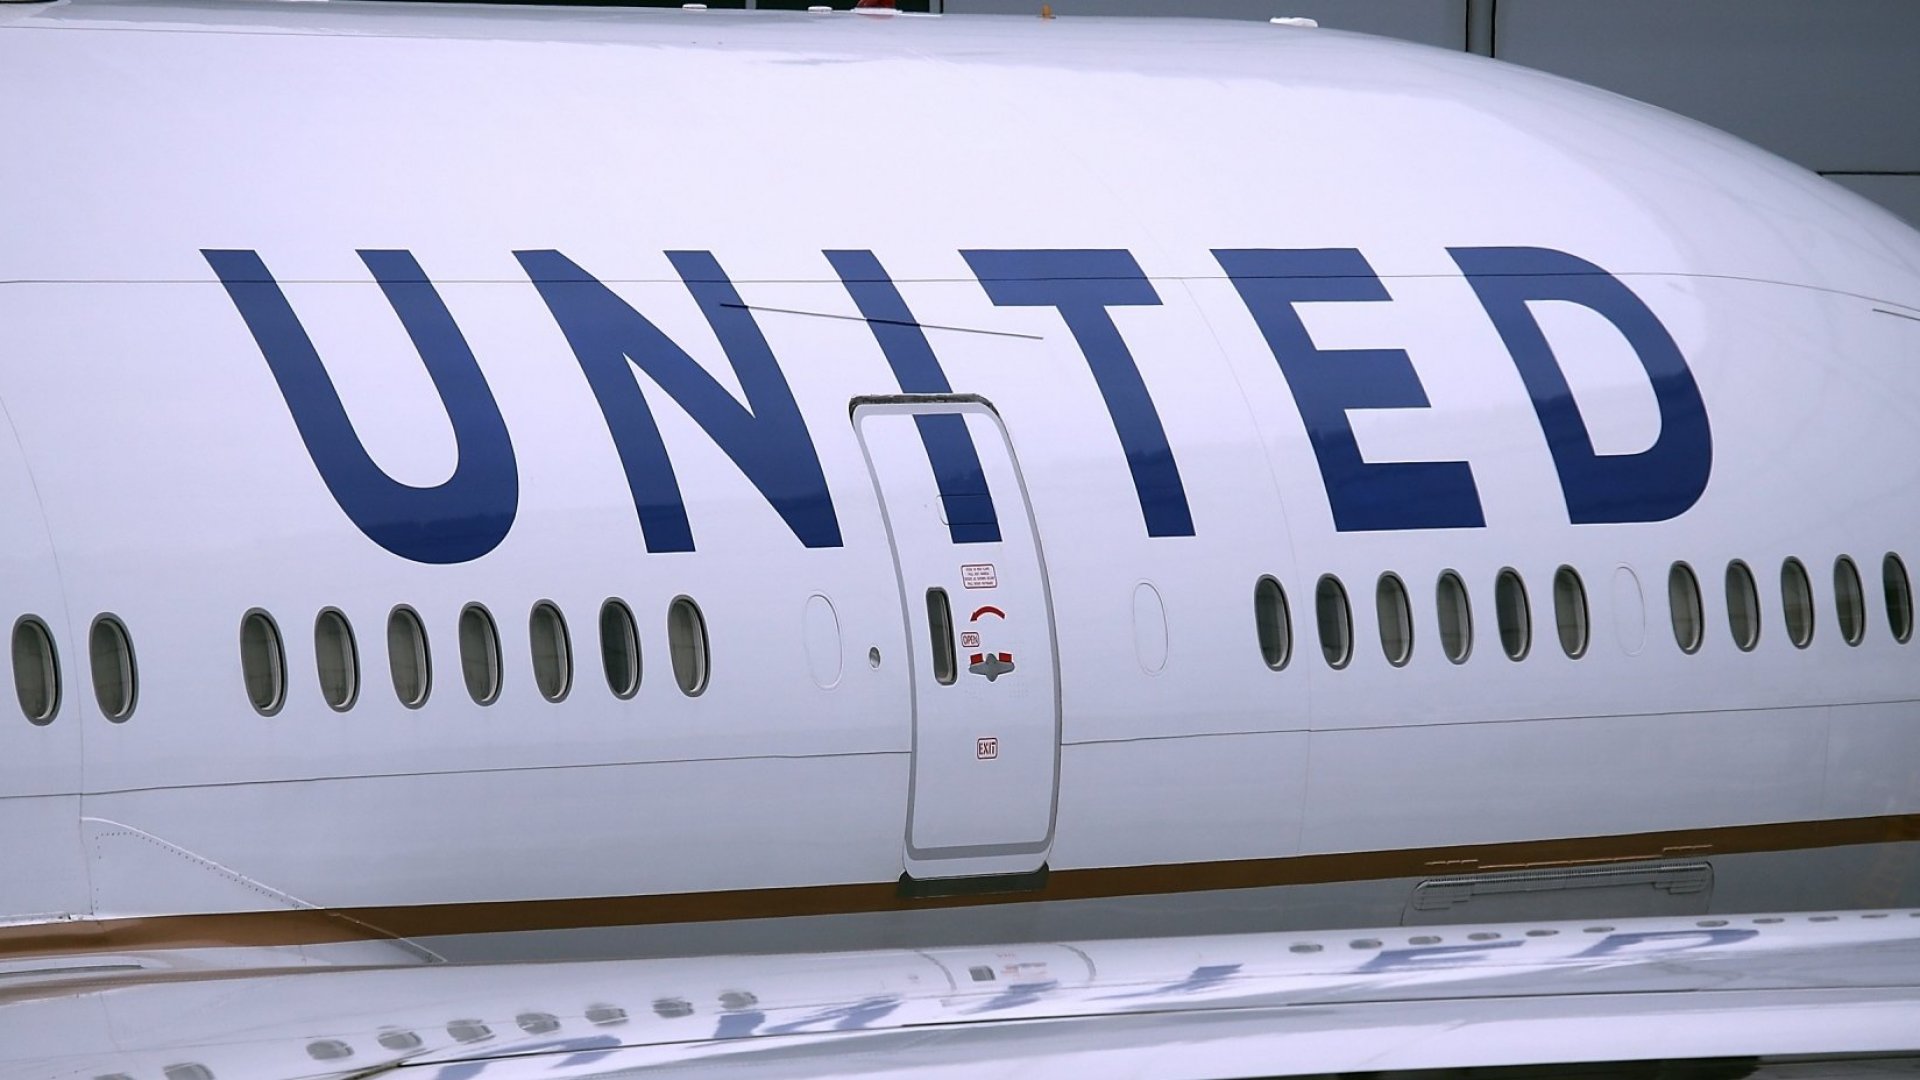 United Airlines avion fuselaje